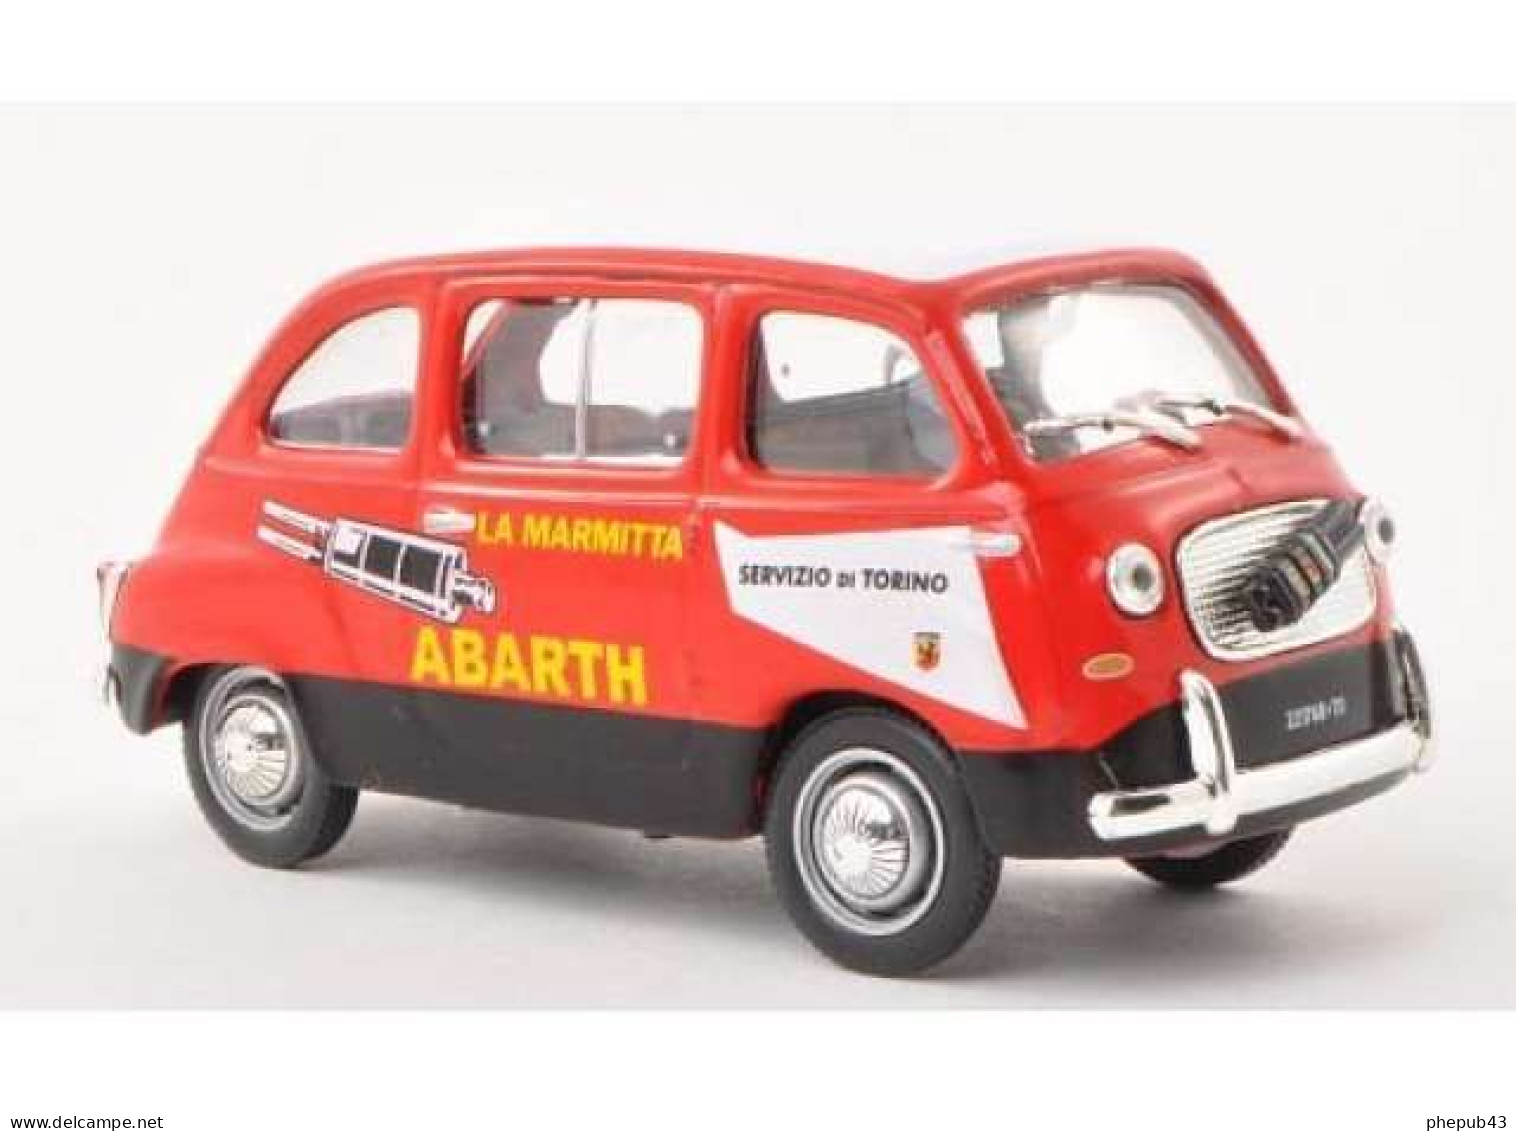 Fiat 750 Multipla Abarth - Servizio Di Torino - 1960 - Red & Black - Altaya - Camiones